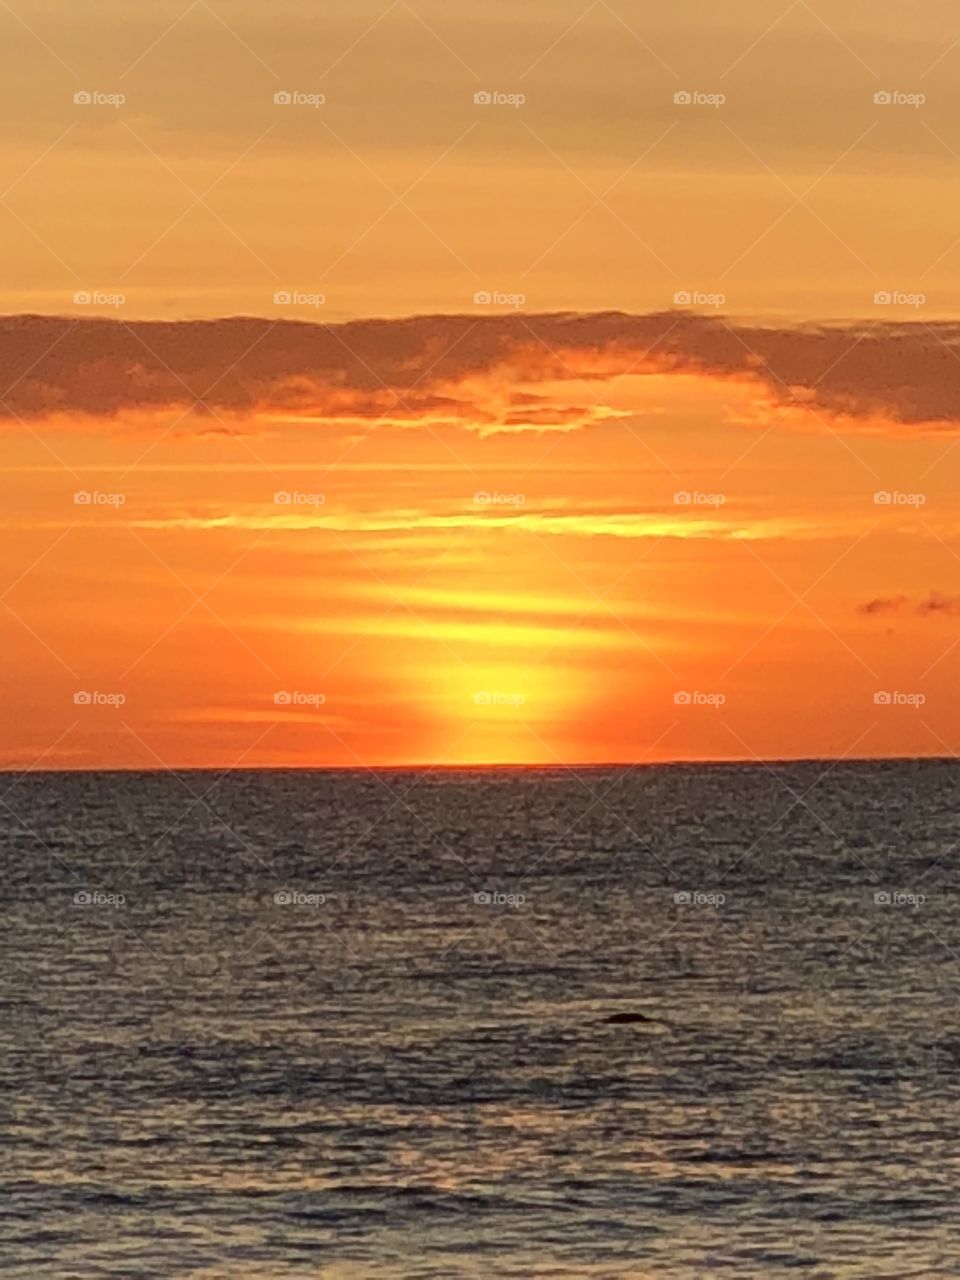 Sunset over Aruba